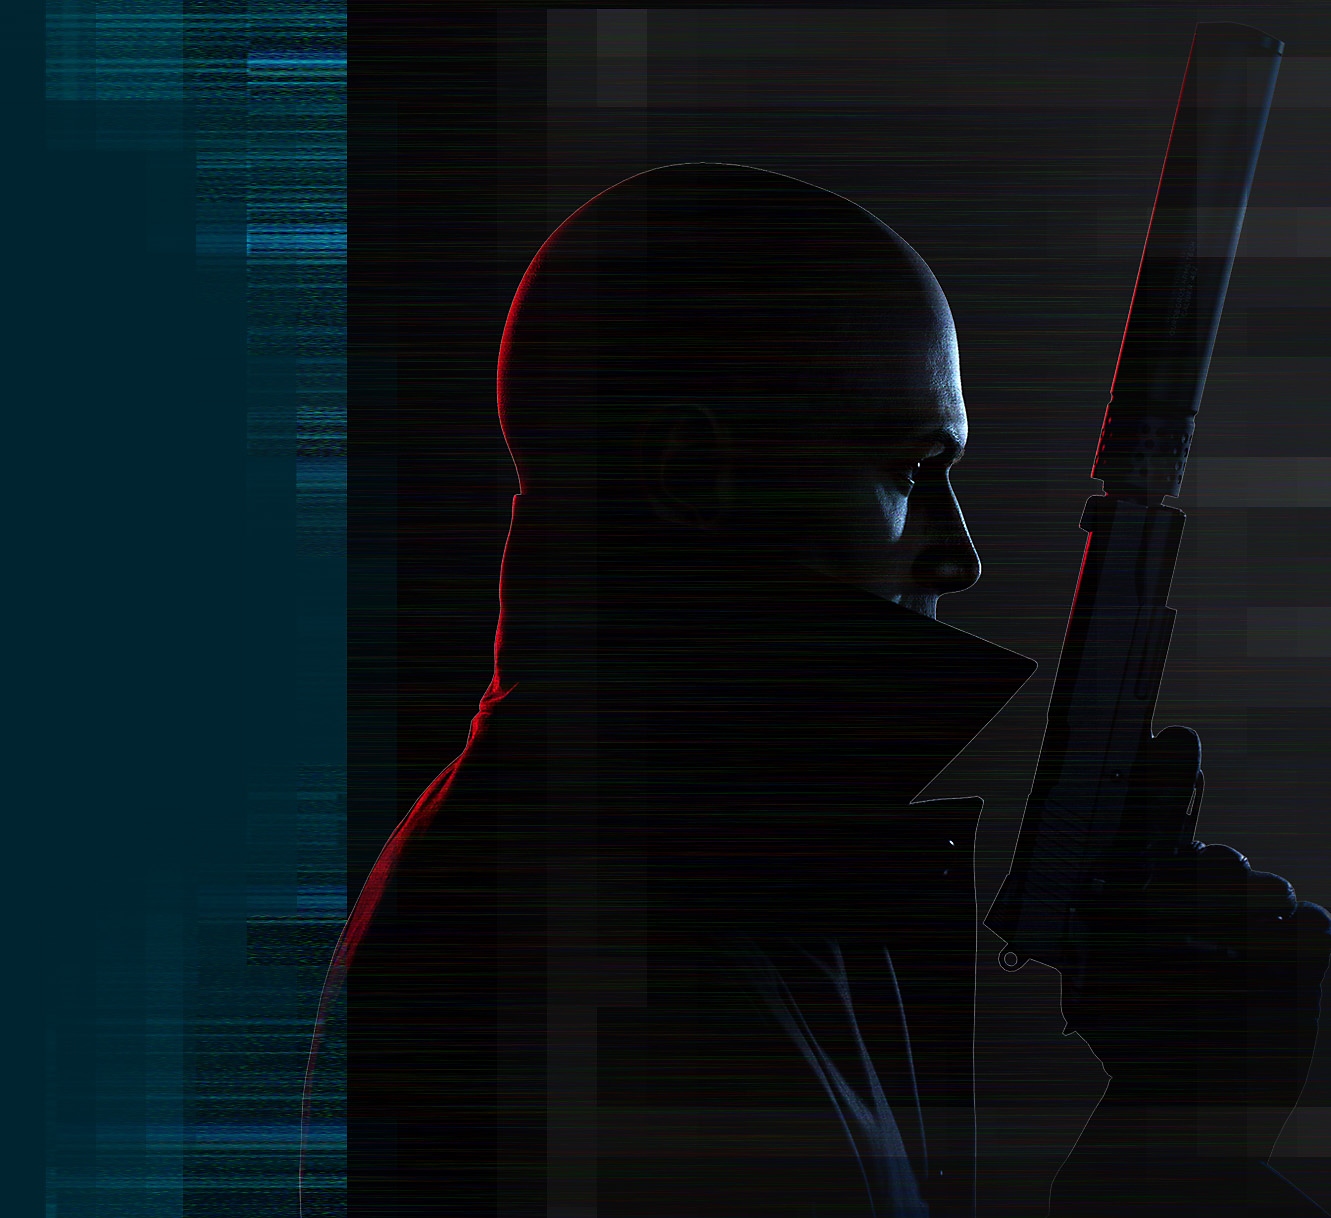 Render artistico del personaggio "Agente 47" di Hitman 3 mentre tiene in mano una pistola con silenziatore